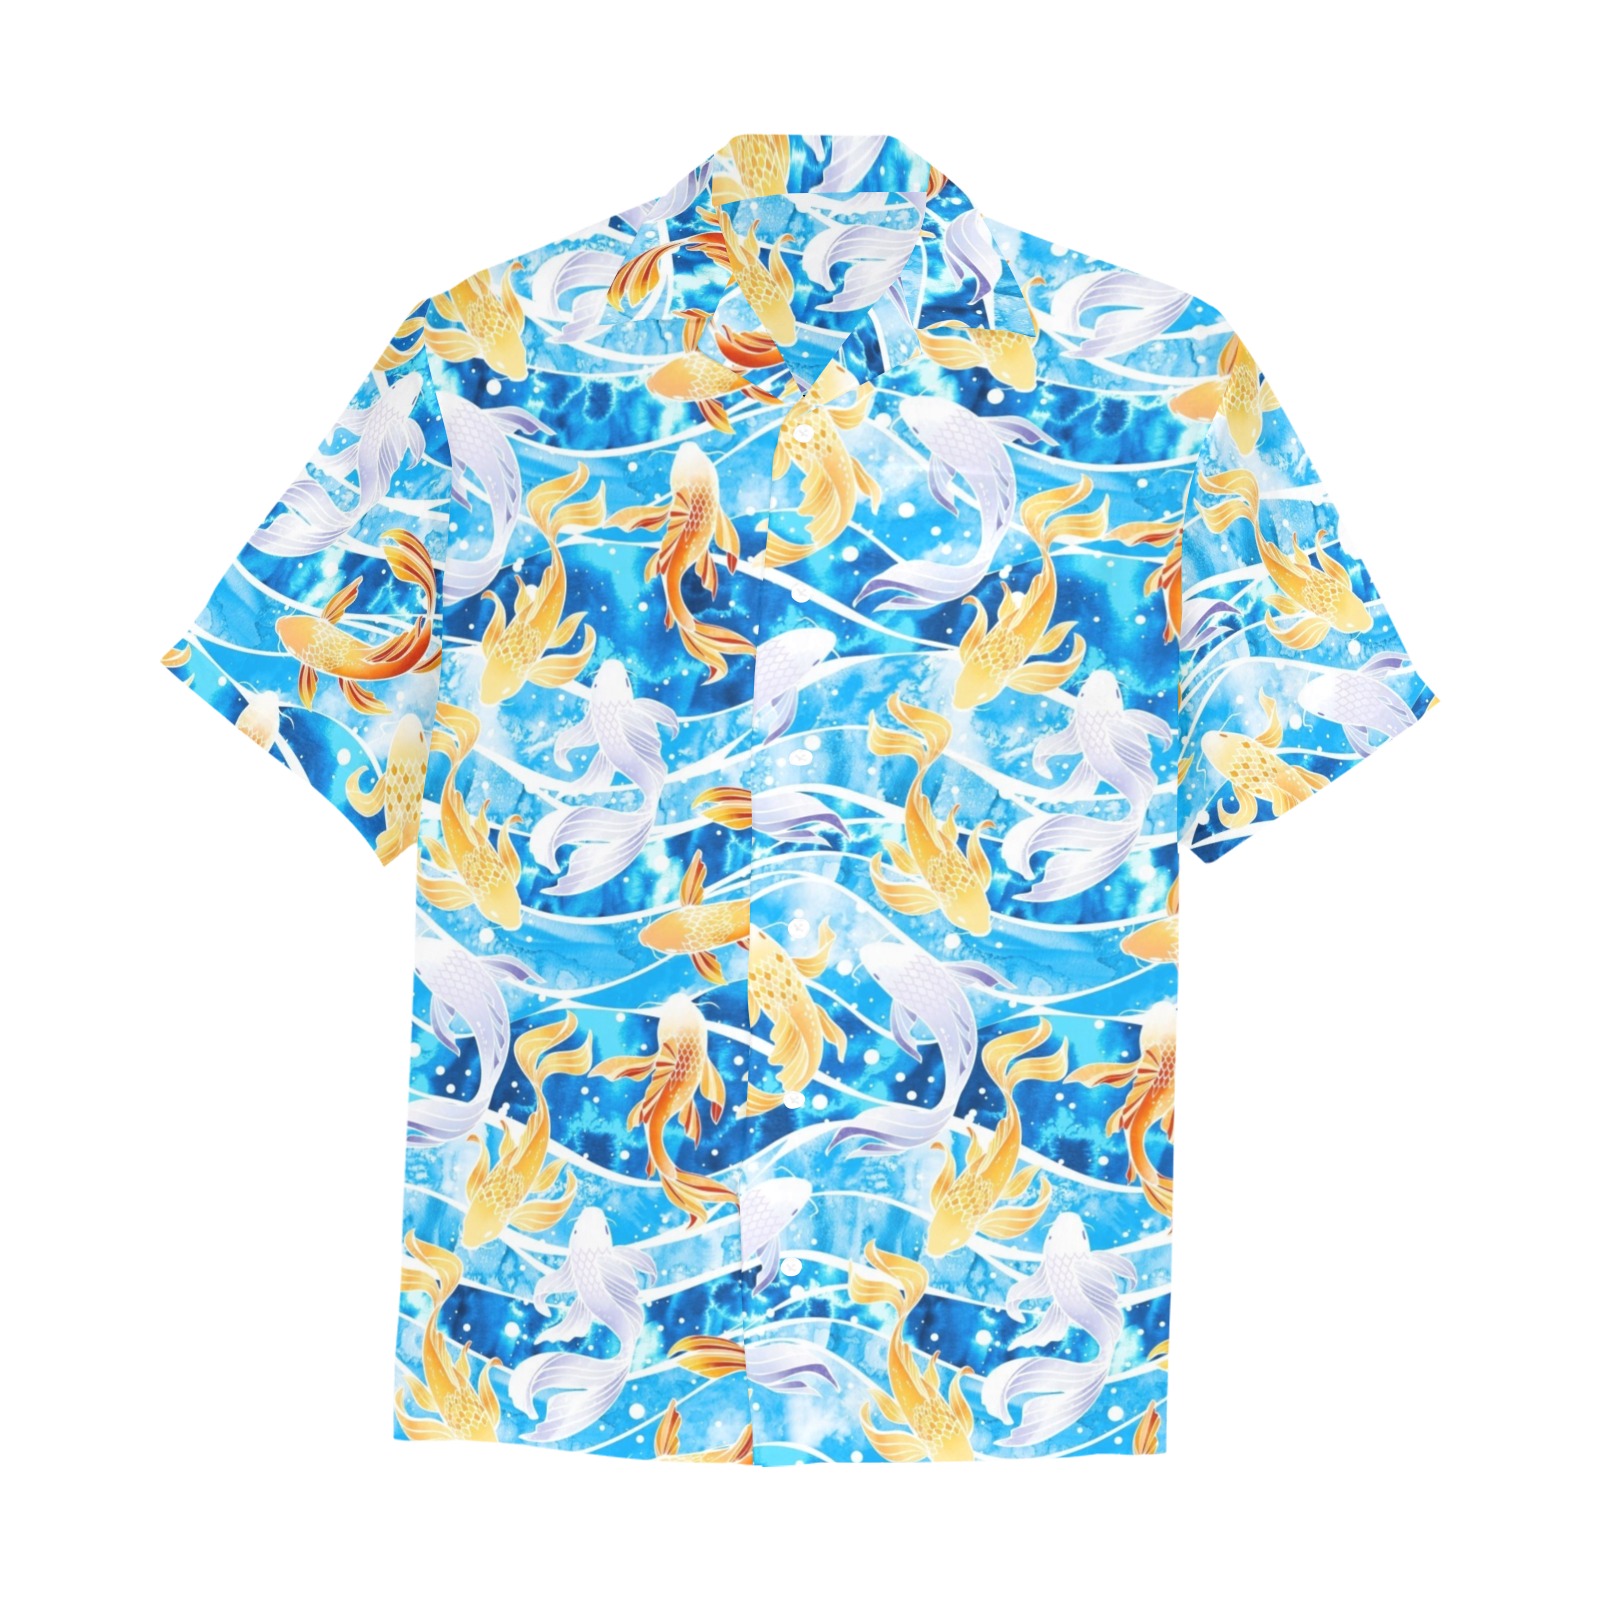 KOI FISH 001 Hawaiian Shirt with Chest Pocket (Model T58)